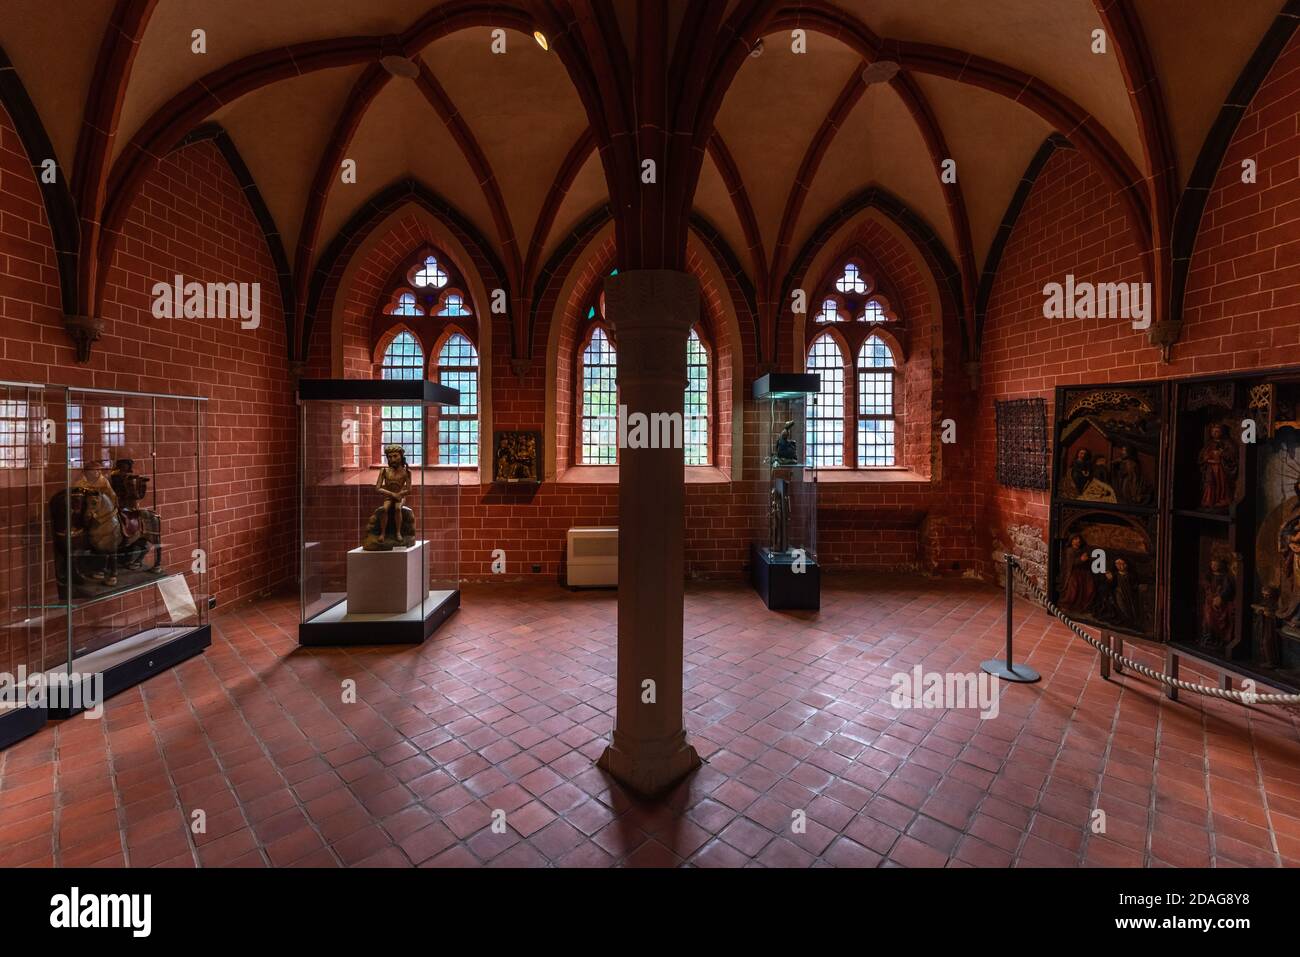 Kulturhistorisches Museum im Dominikanerkloster di Prenzlau in der Uckermark, Brandeburgo, Innenansicht, Gewölbe Foto Stock